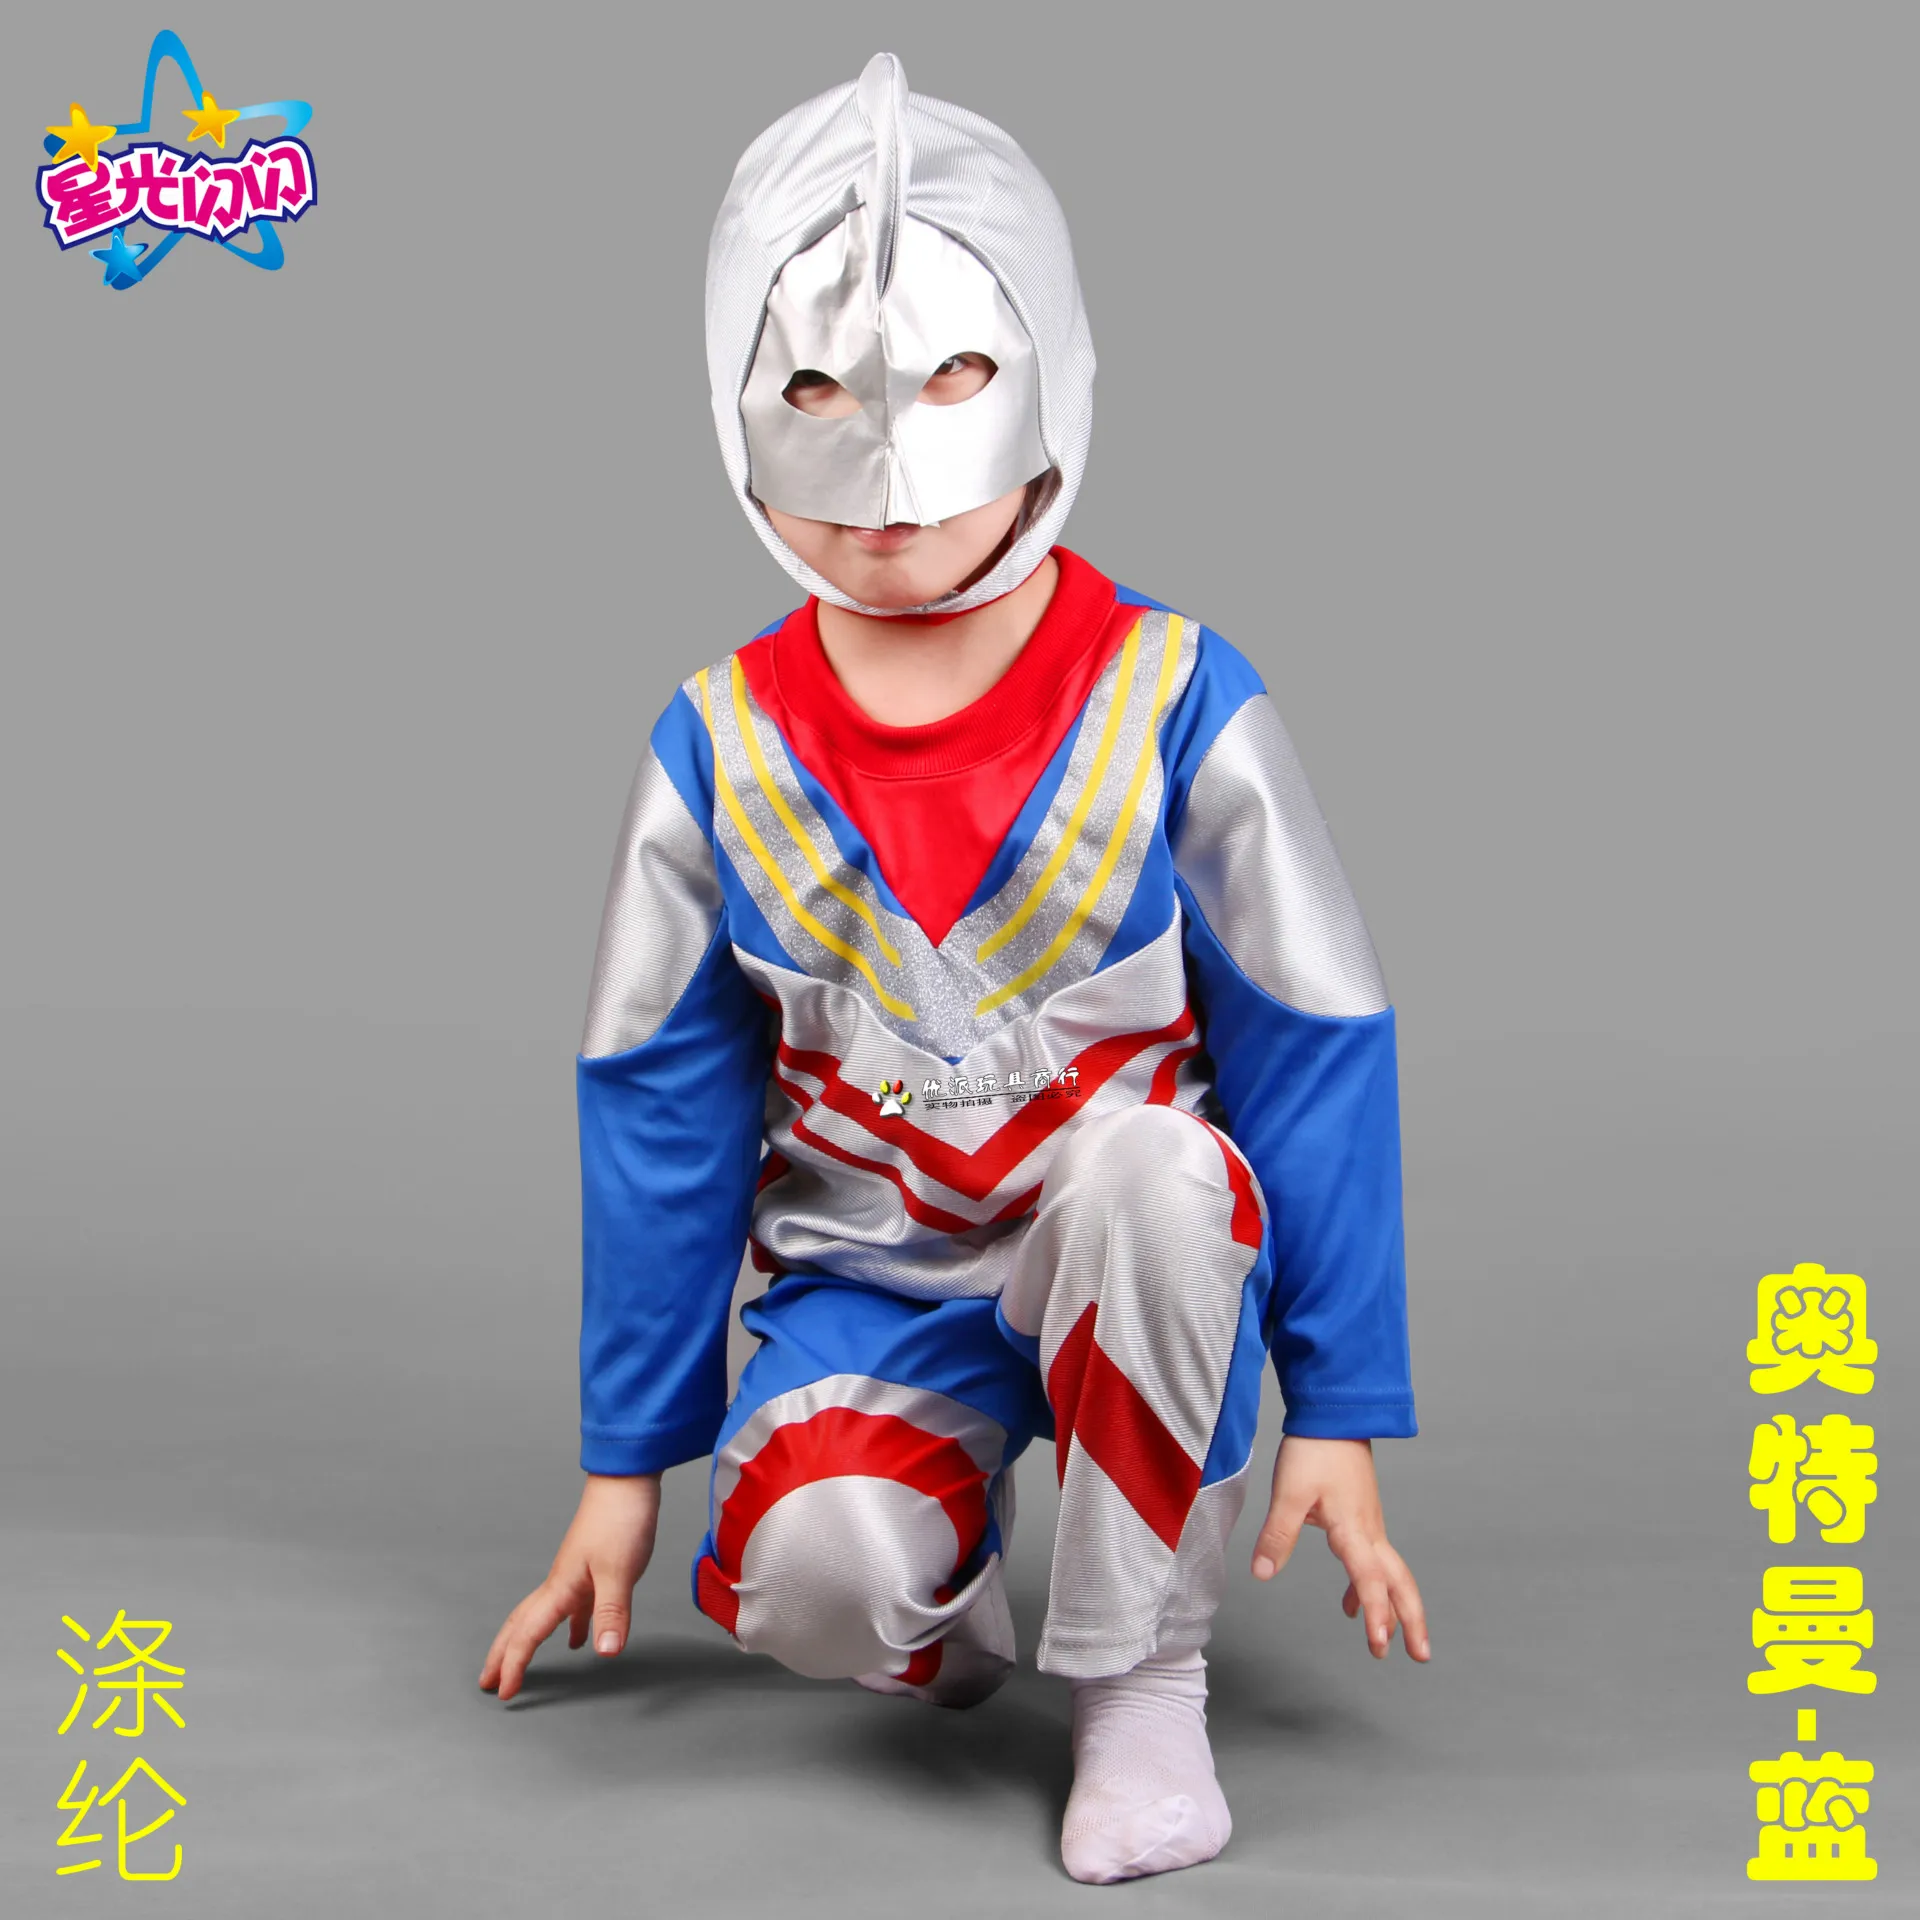 Hari Anak Pakaian Boys Festival Anak Altman Kartun Kostum Ultraman